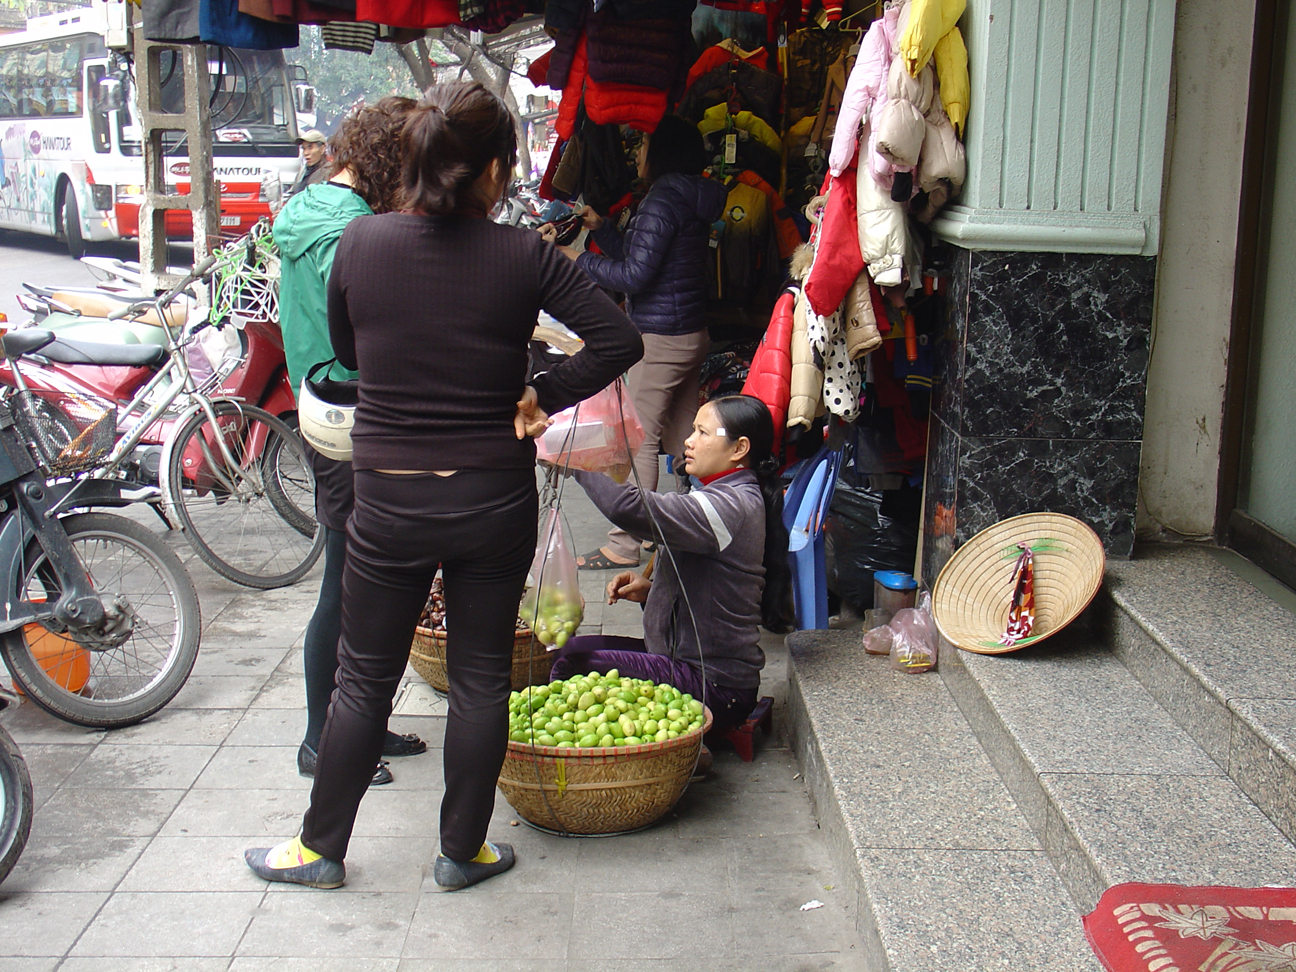 A vendor selling green fruits